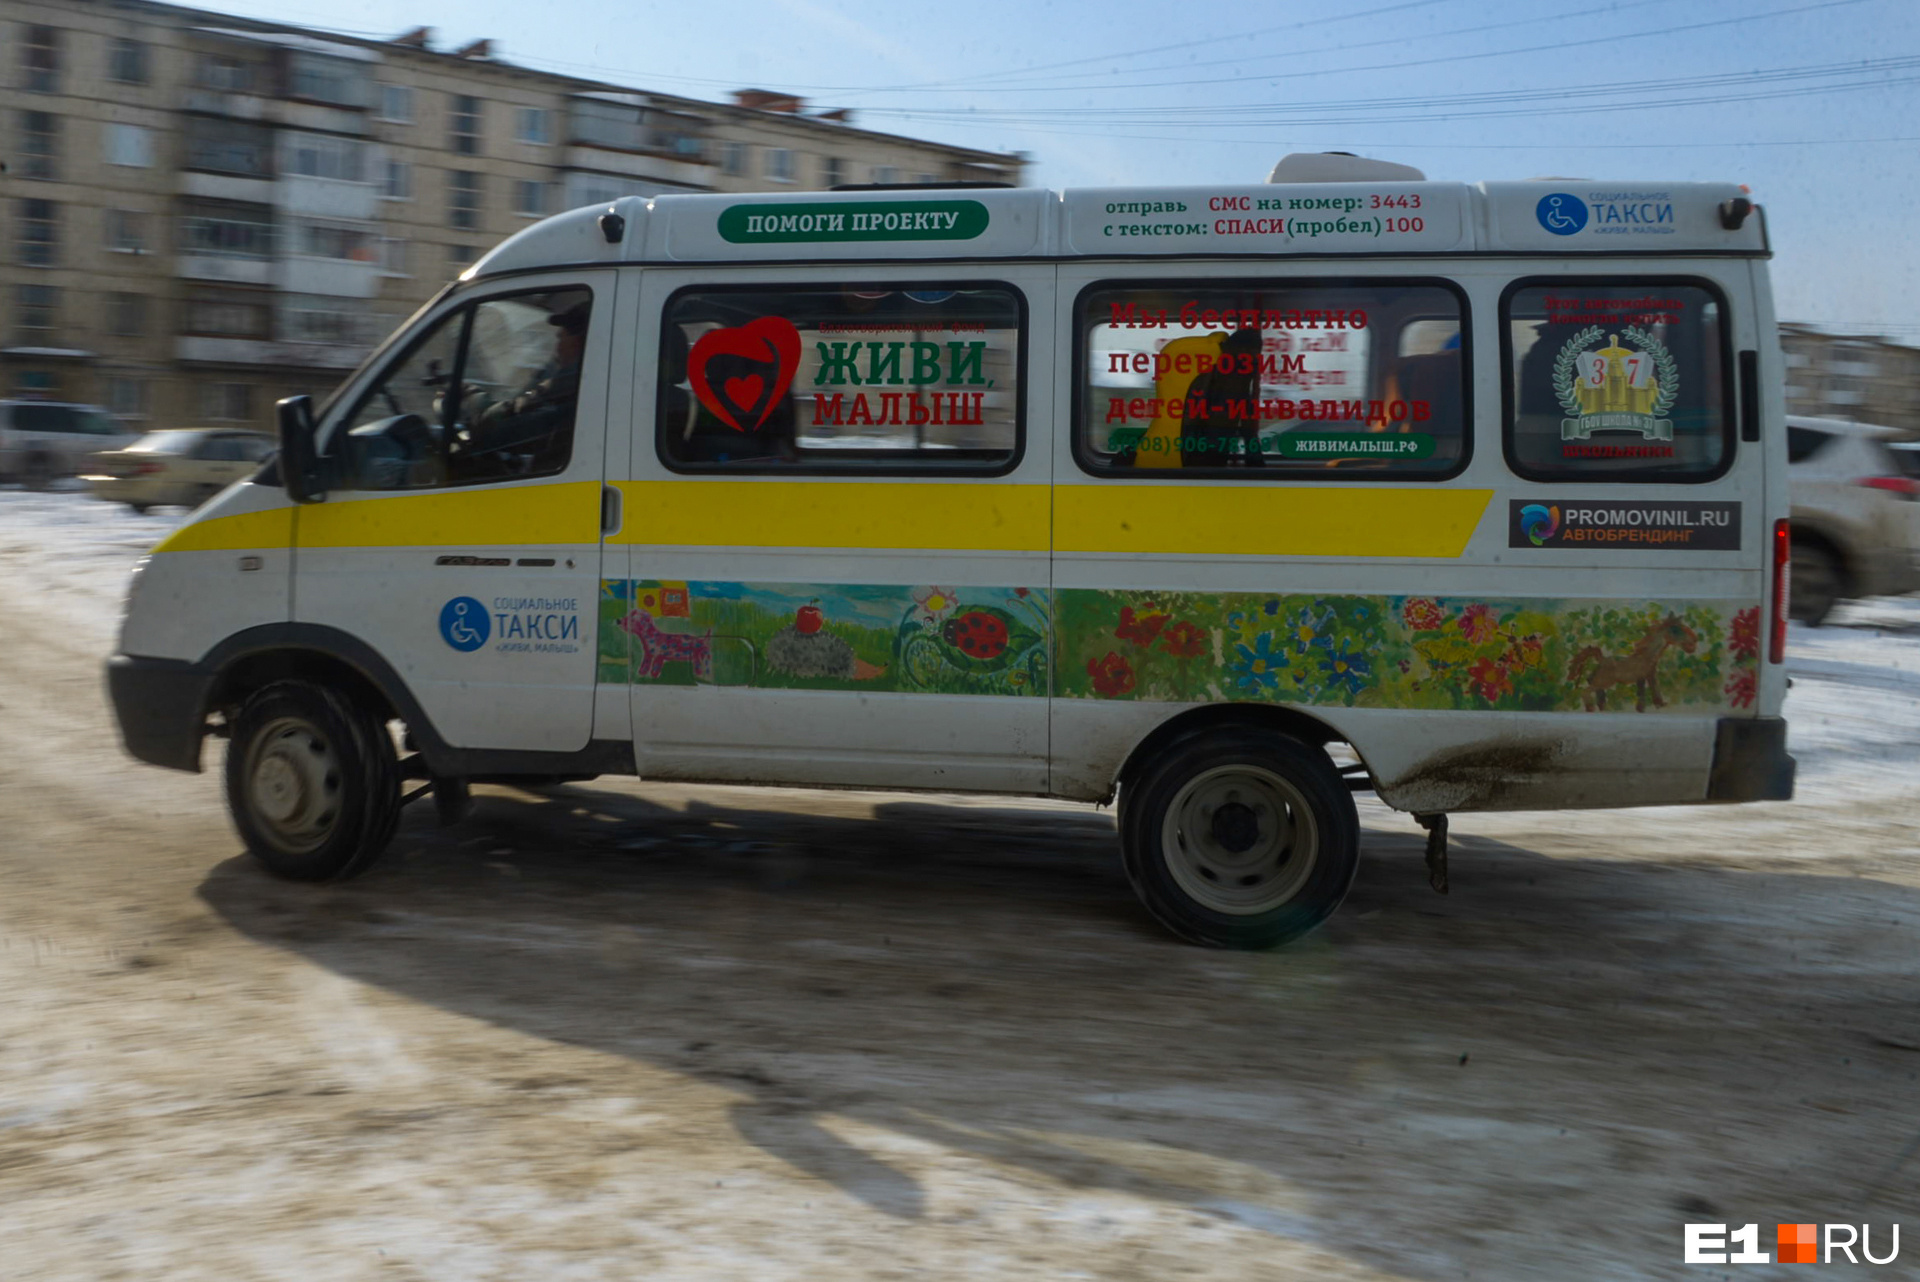 Такси пышма телефон. Такси для инвалидов. Социальное такси в России. Такси фонд помощи. Такси Волгоград для детей инвалидов.